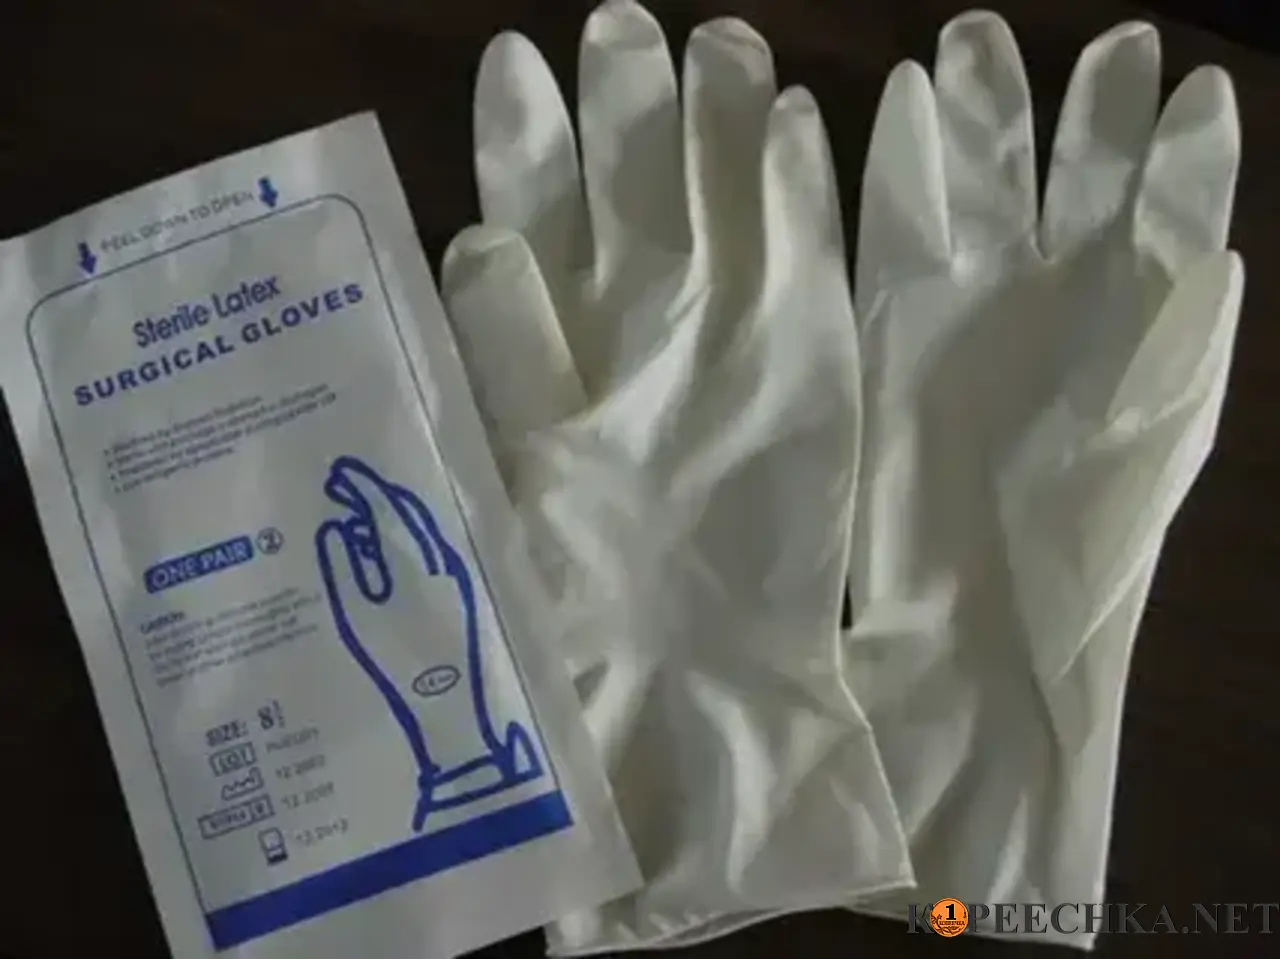 Купить перчатки в аптеке. Хирургические перчатки. Перчатки медицинские стерильные. Резиновые перчатки хирургические. Стерильные не стирильные перчатки.